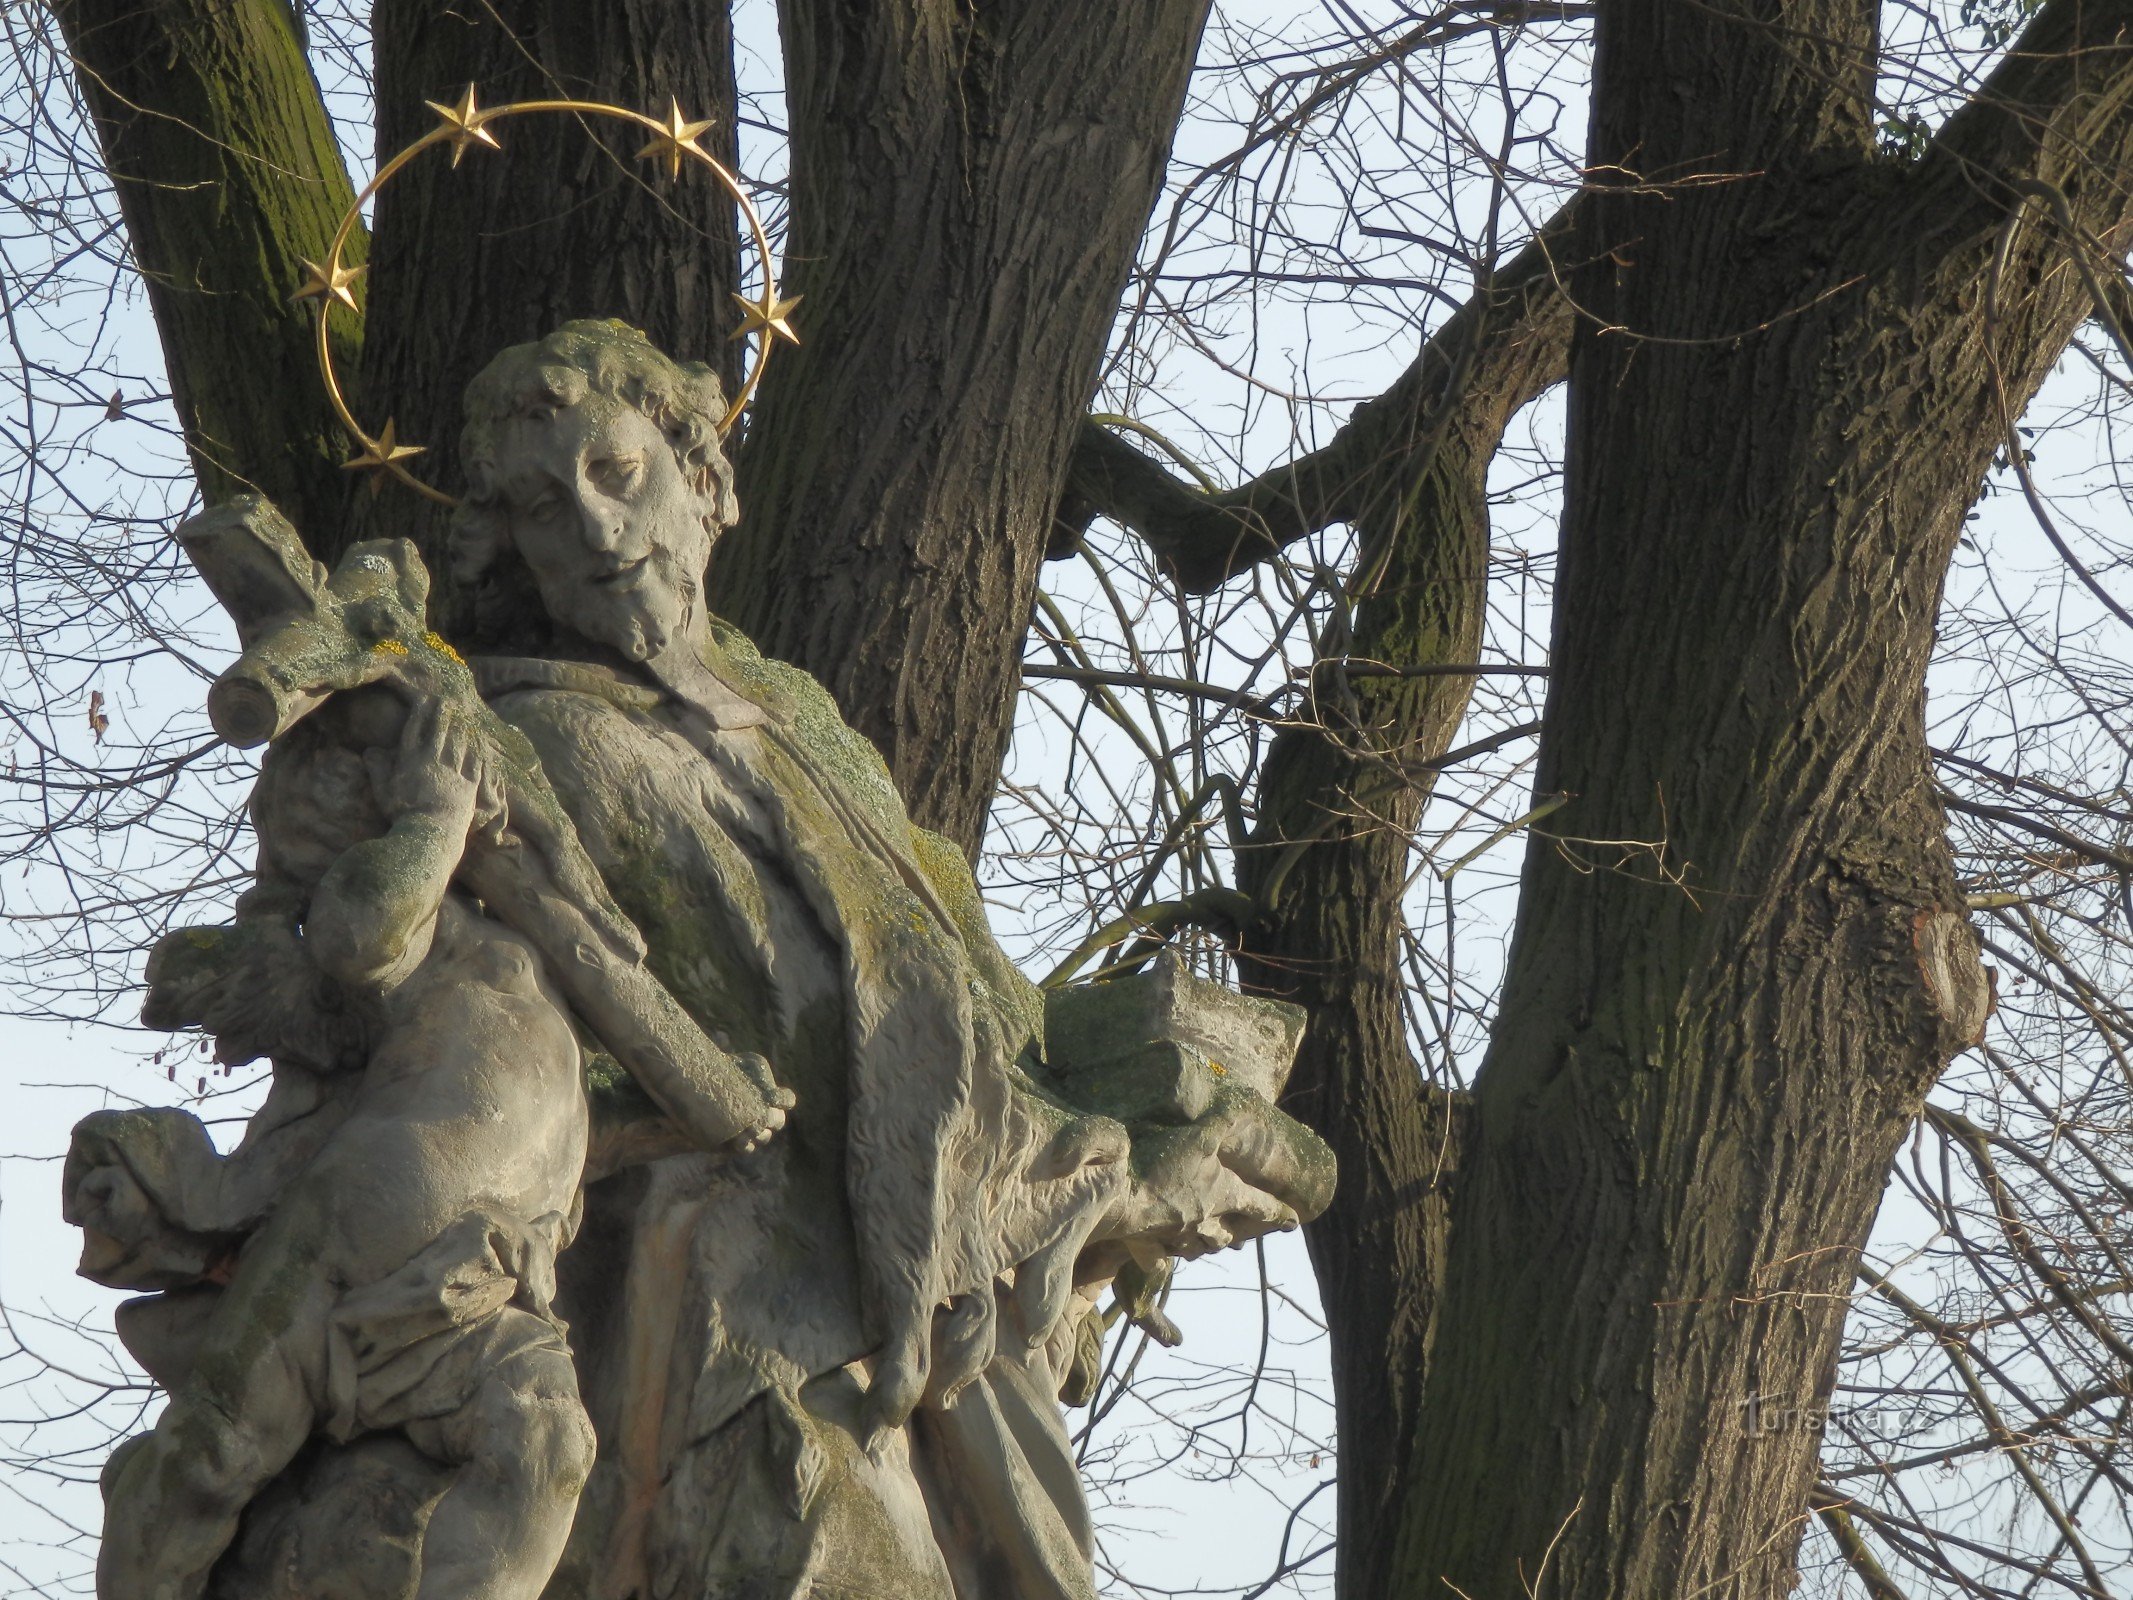 Peregrinação escultórica de Dub nad Moravou a Olomouc - nos passos das peregrinações barrocas